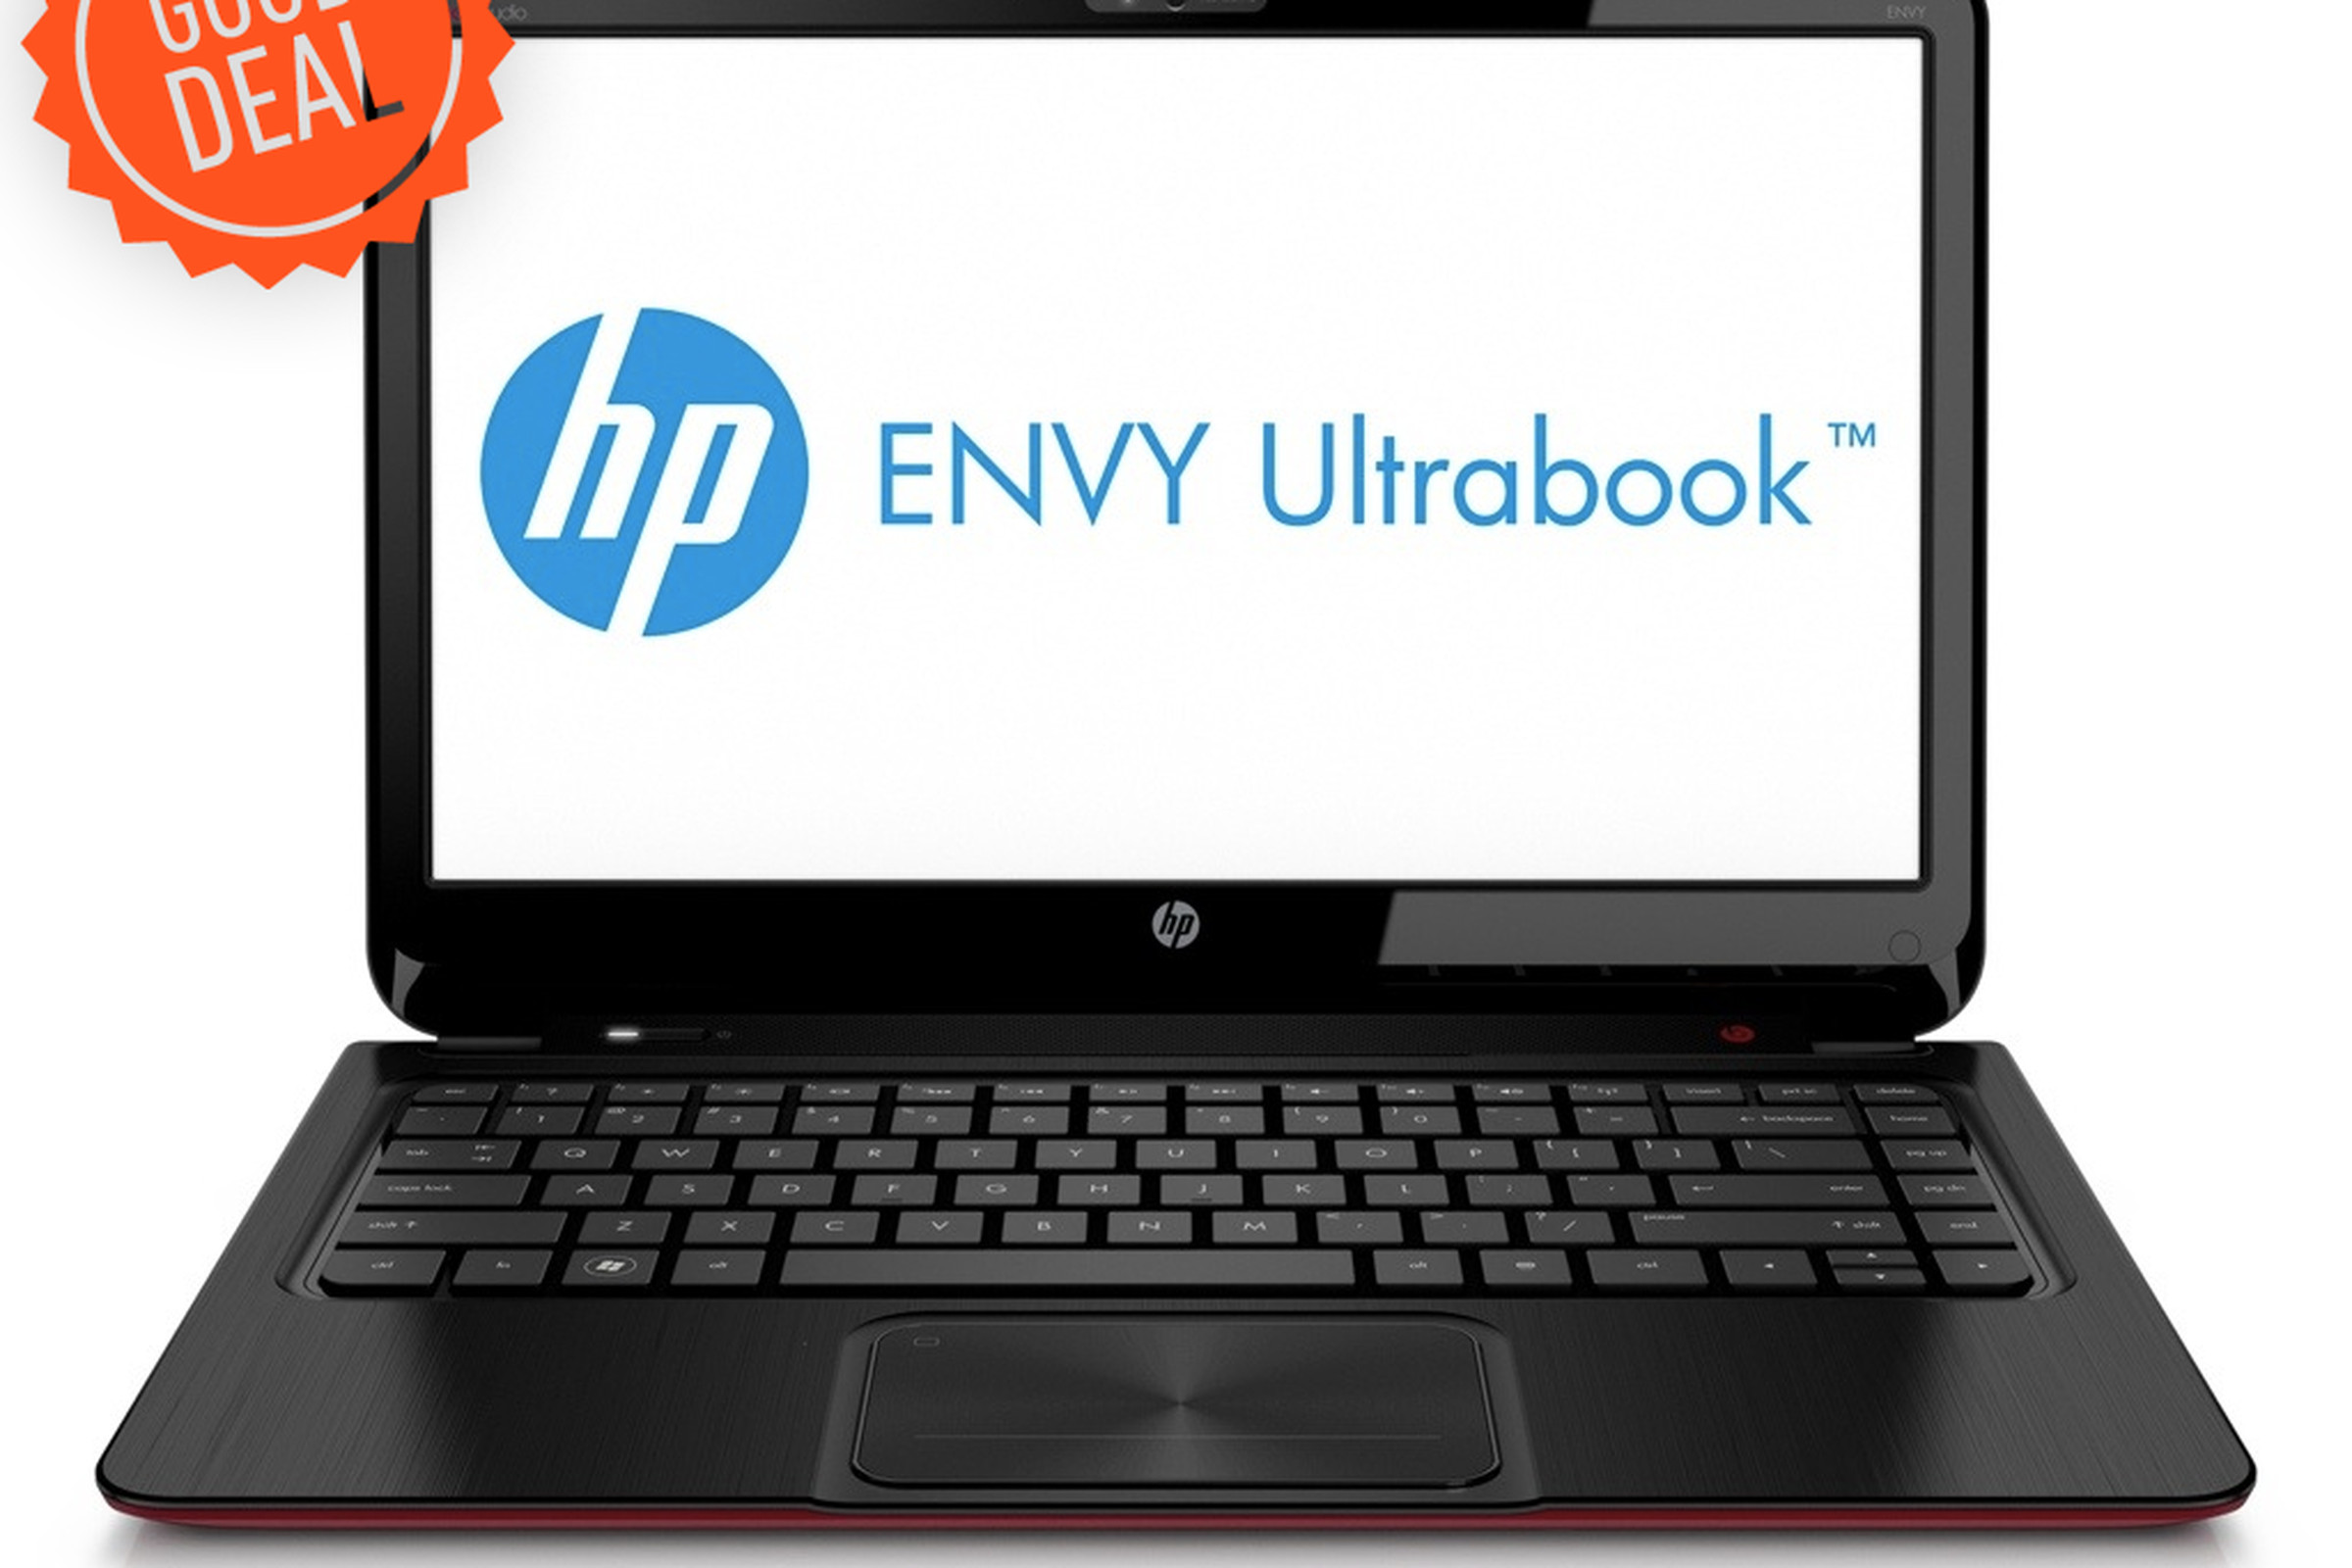 HP Envy Ultrabook Good Deal